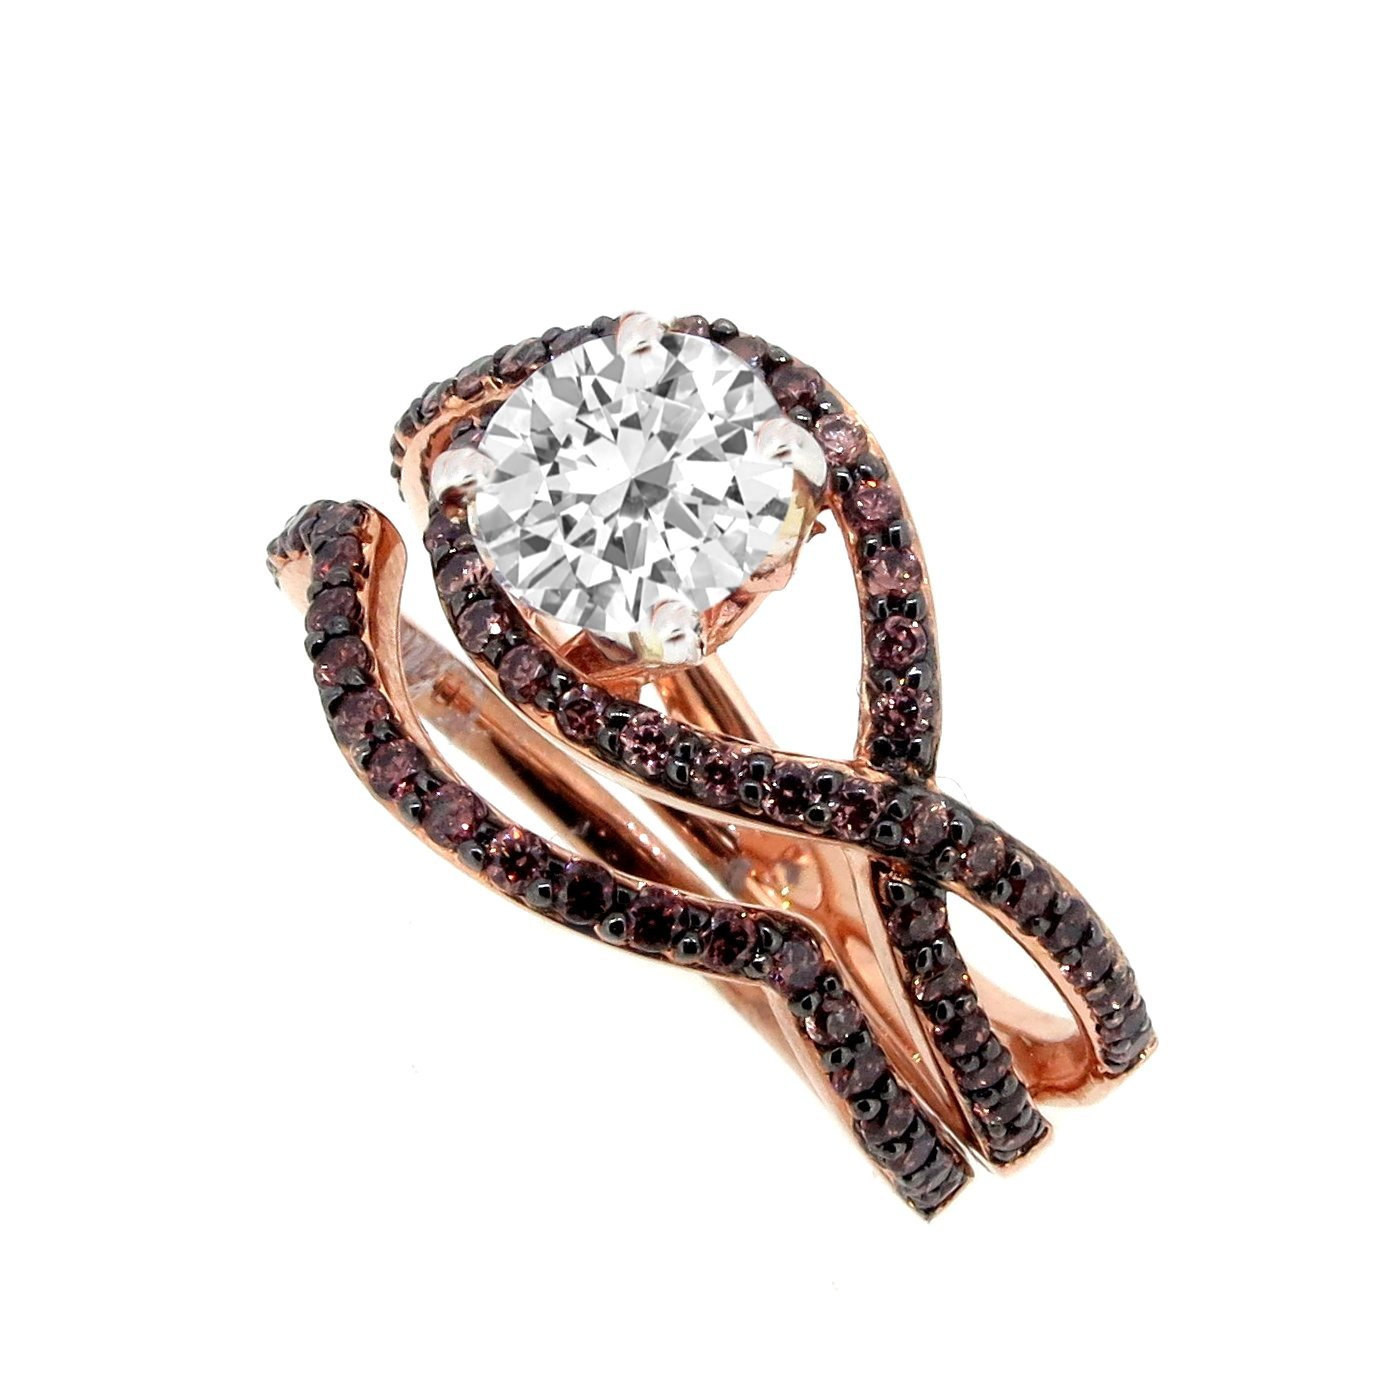 Chocolate Diamond Engagement Ring
 Unique Infinity Chocolate Brown Diamond Engagement and